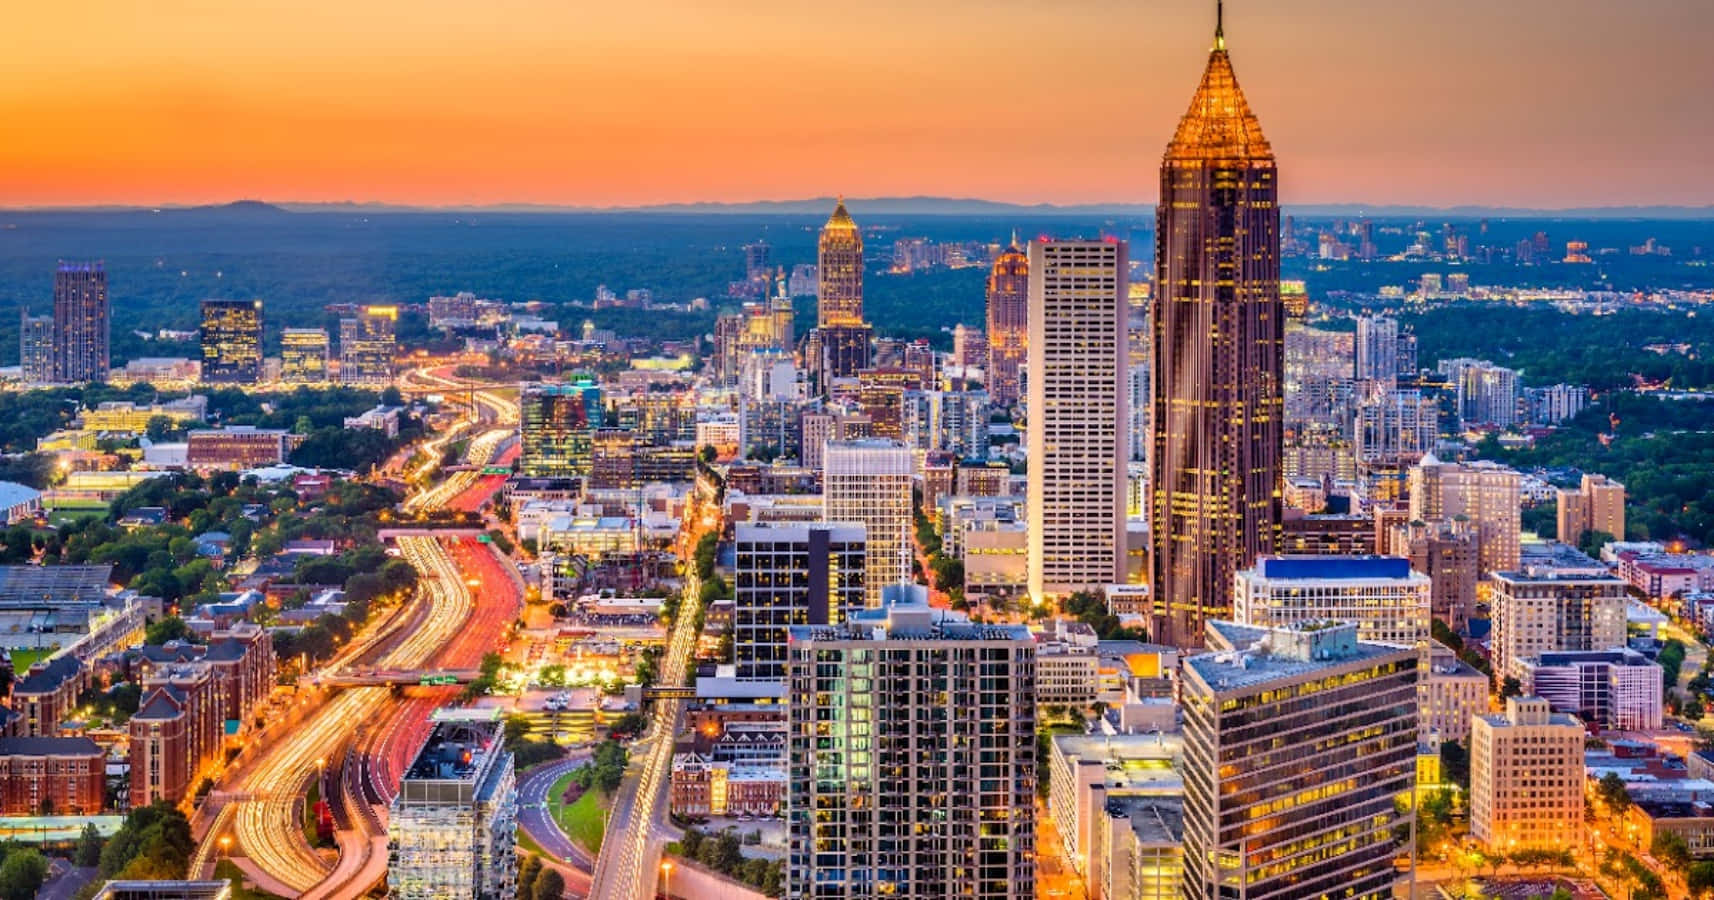 Enjoy the City of Atlanta, Georgia